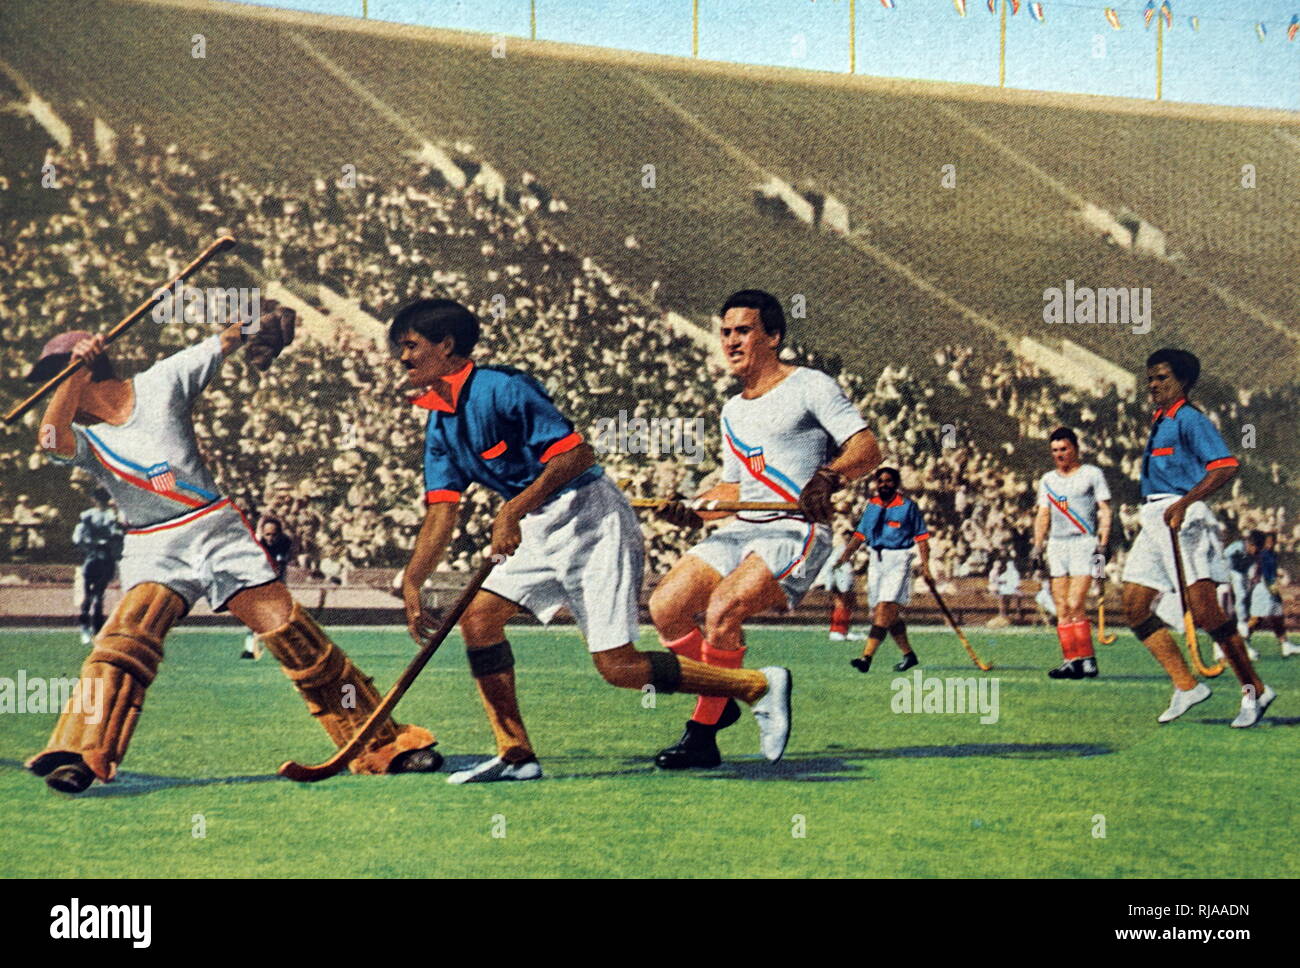 Foto von Indien spielen gegen die USA im Feld Hockey während der Olympischen Spiele 1932. Indien nahm Gold in den Fall, während den USA Bronze nahm. Stockfoto